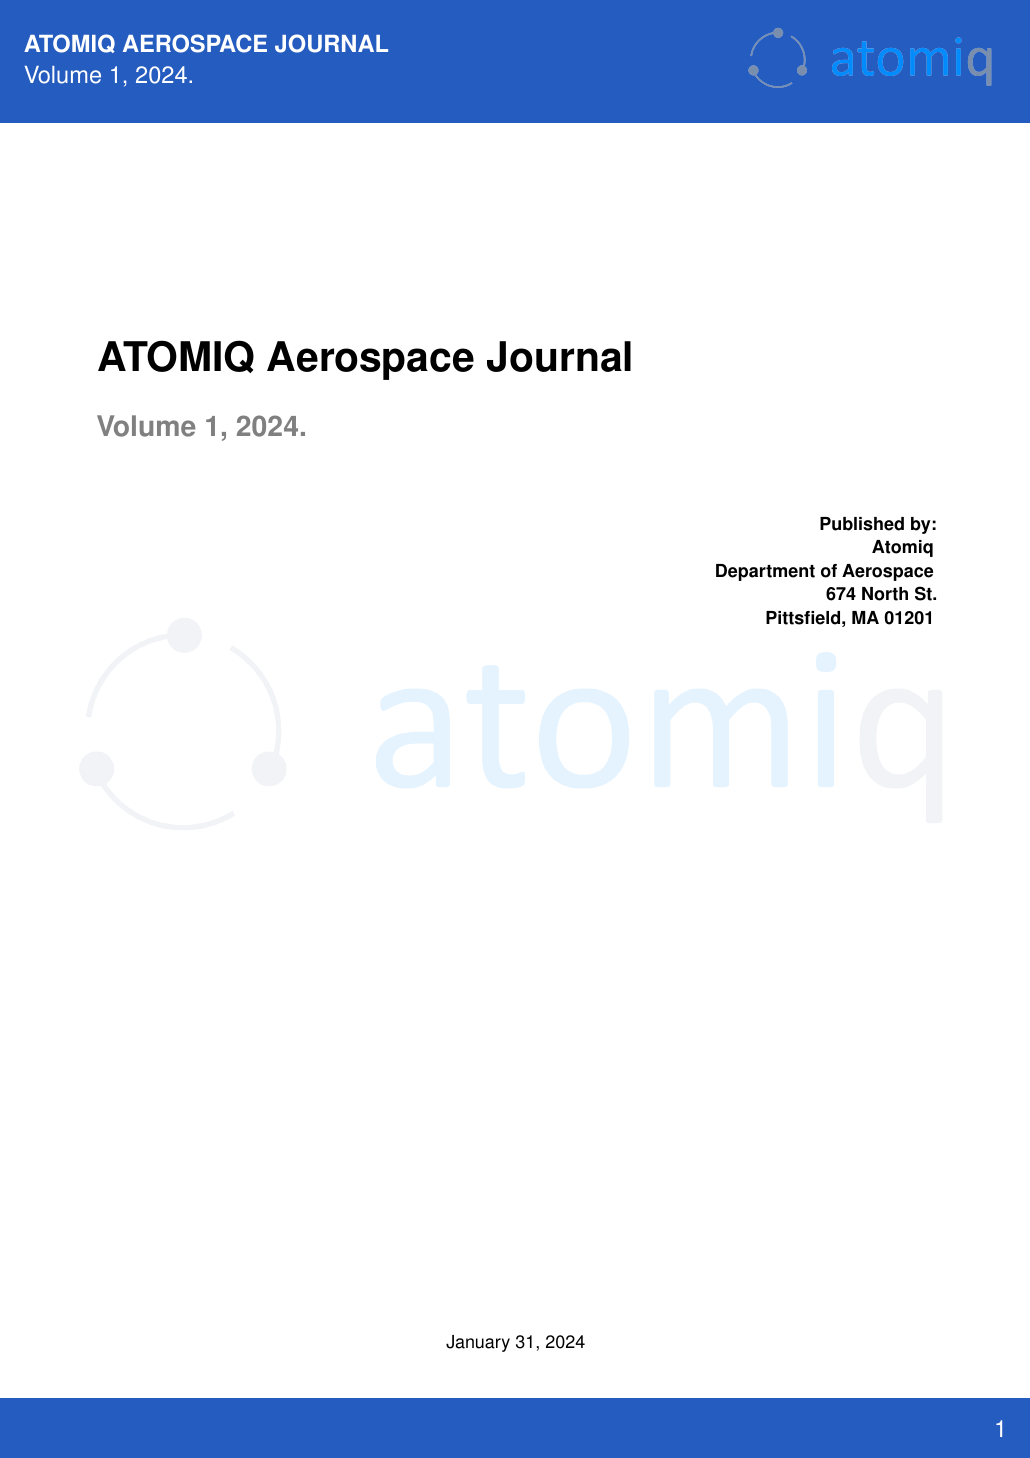 AtomiqAerospaceJournal